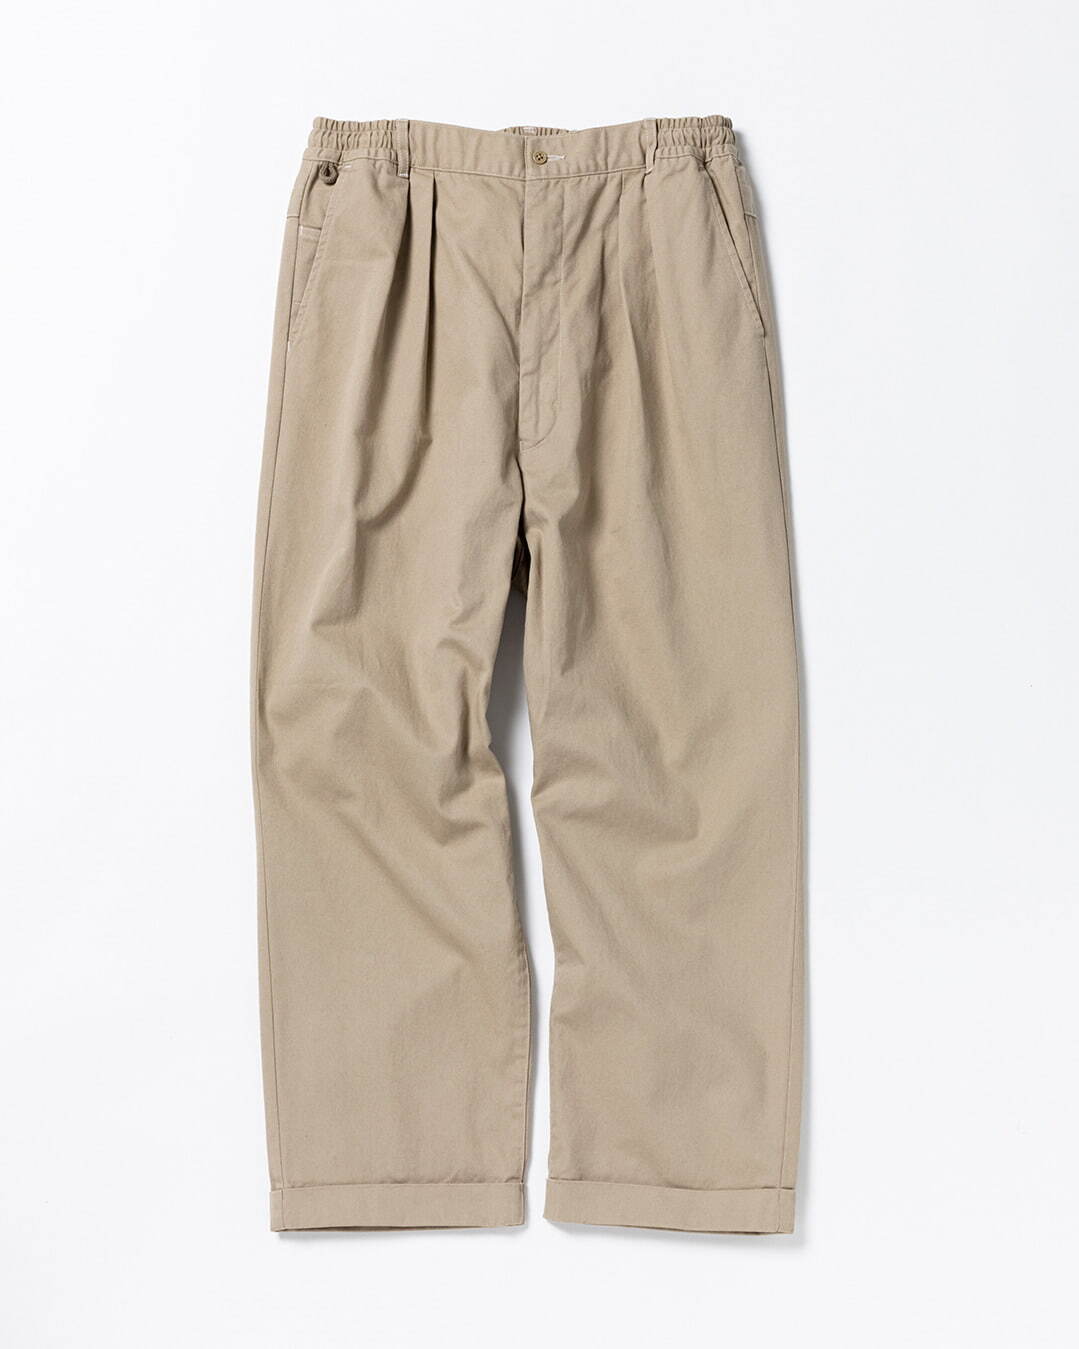 Chino Pants 16,500円